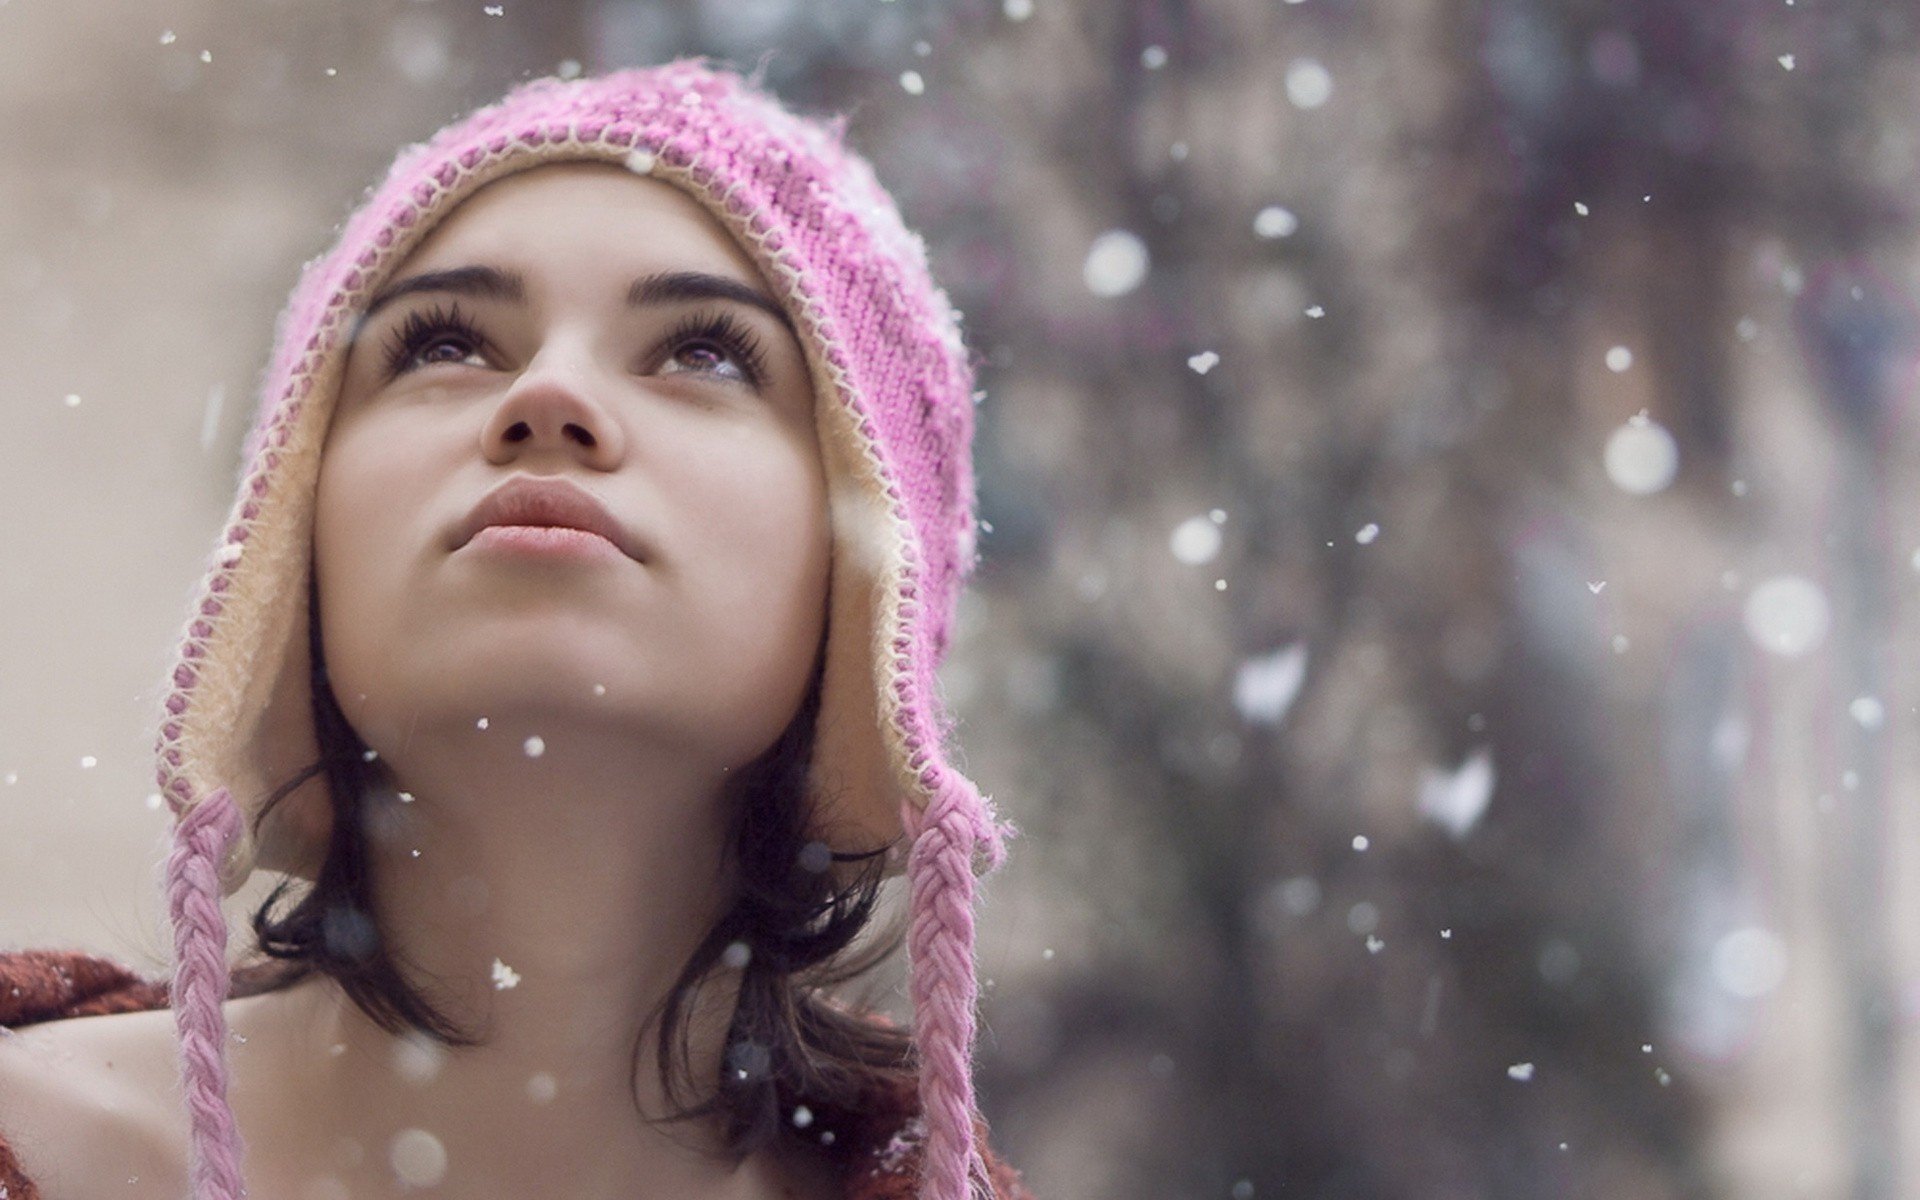 dziewczyna nev modelki dziewczyny oczy spojrzenie twarz portret śnieg kobiety